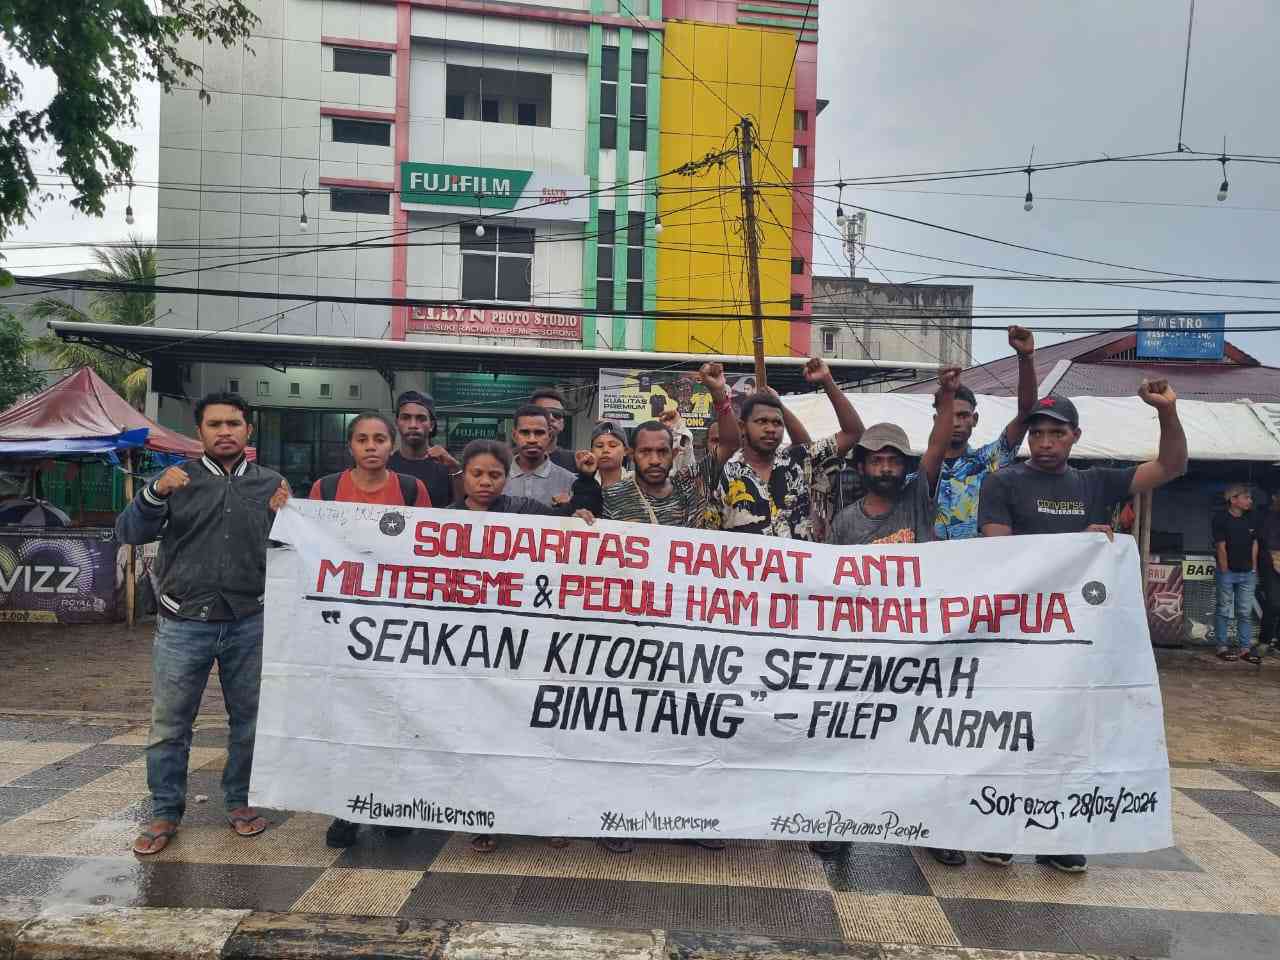 Seakan Kitorang Setengah Binatang; Pers Rilis, Solidaritas Rakyat Anti Militerisme dan Peduli HAM di Tanah Papua